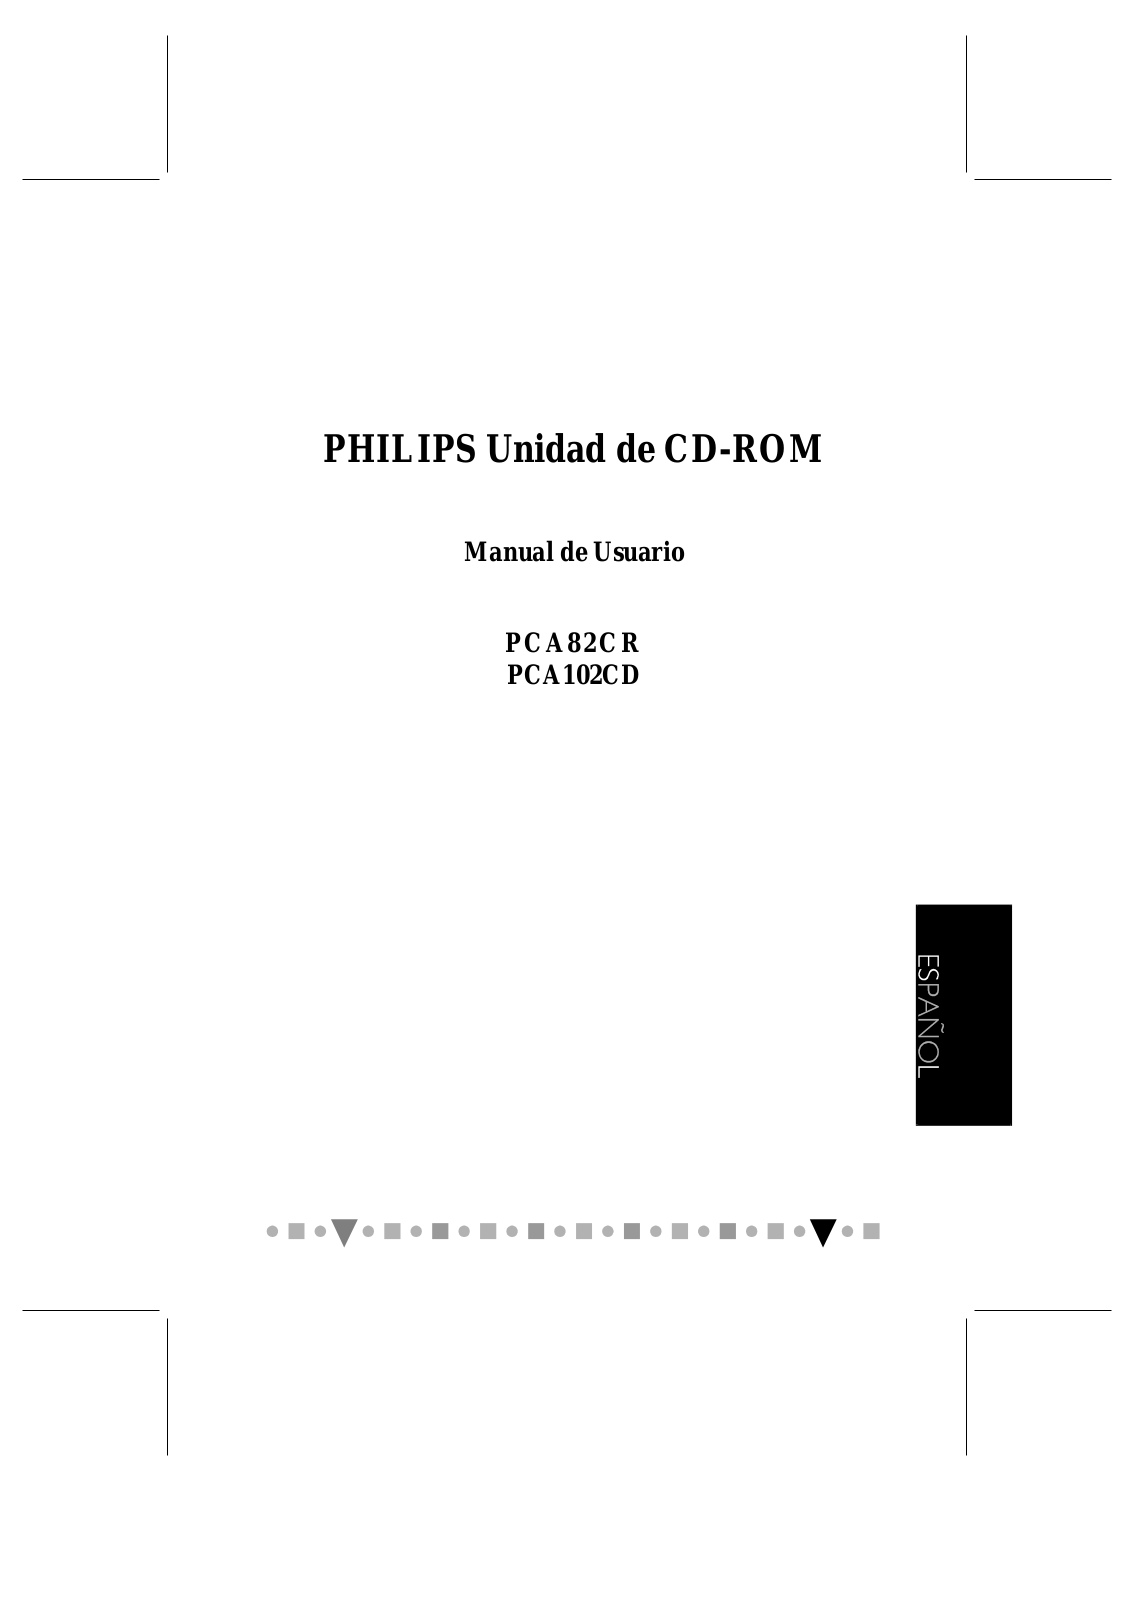 Philips PCA102CD/M2 User Manual